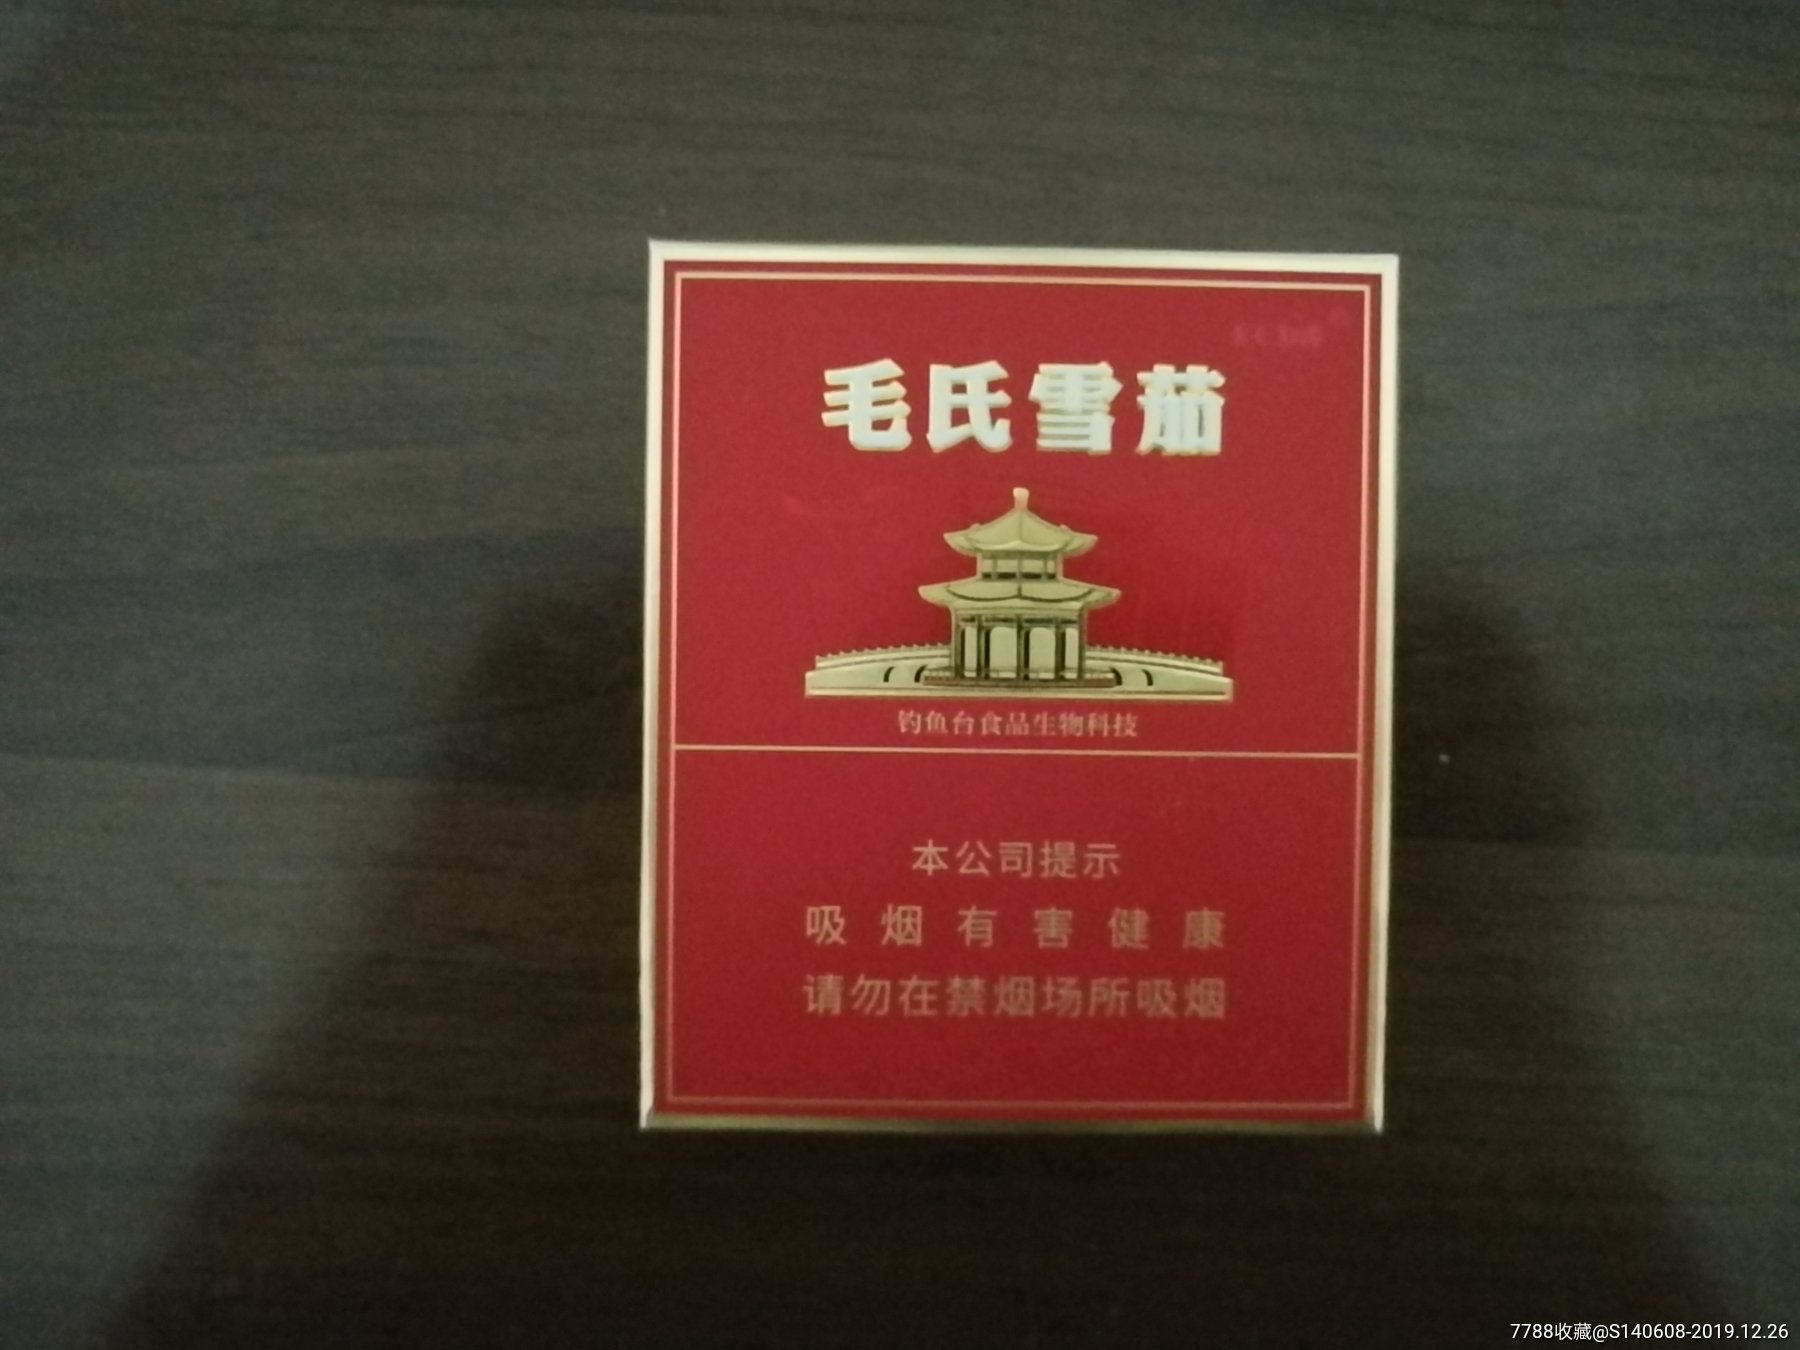 毛氏雪茄3d-烟标/烟盒-7788收藏